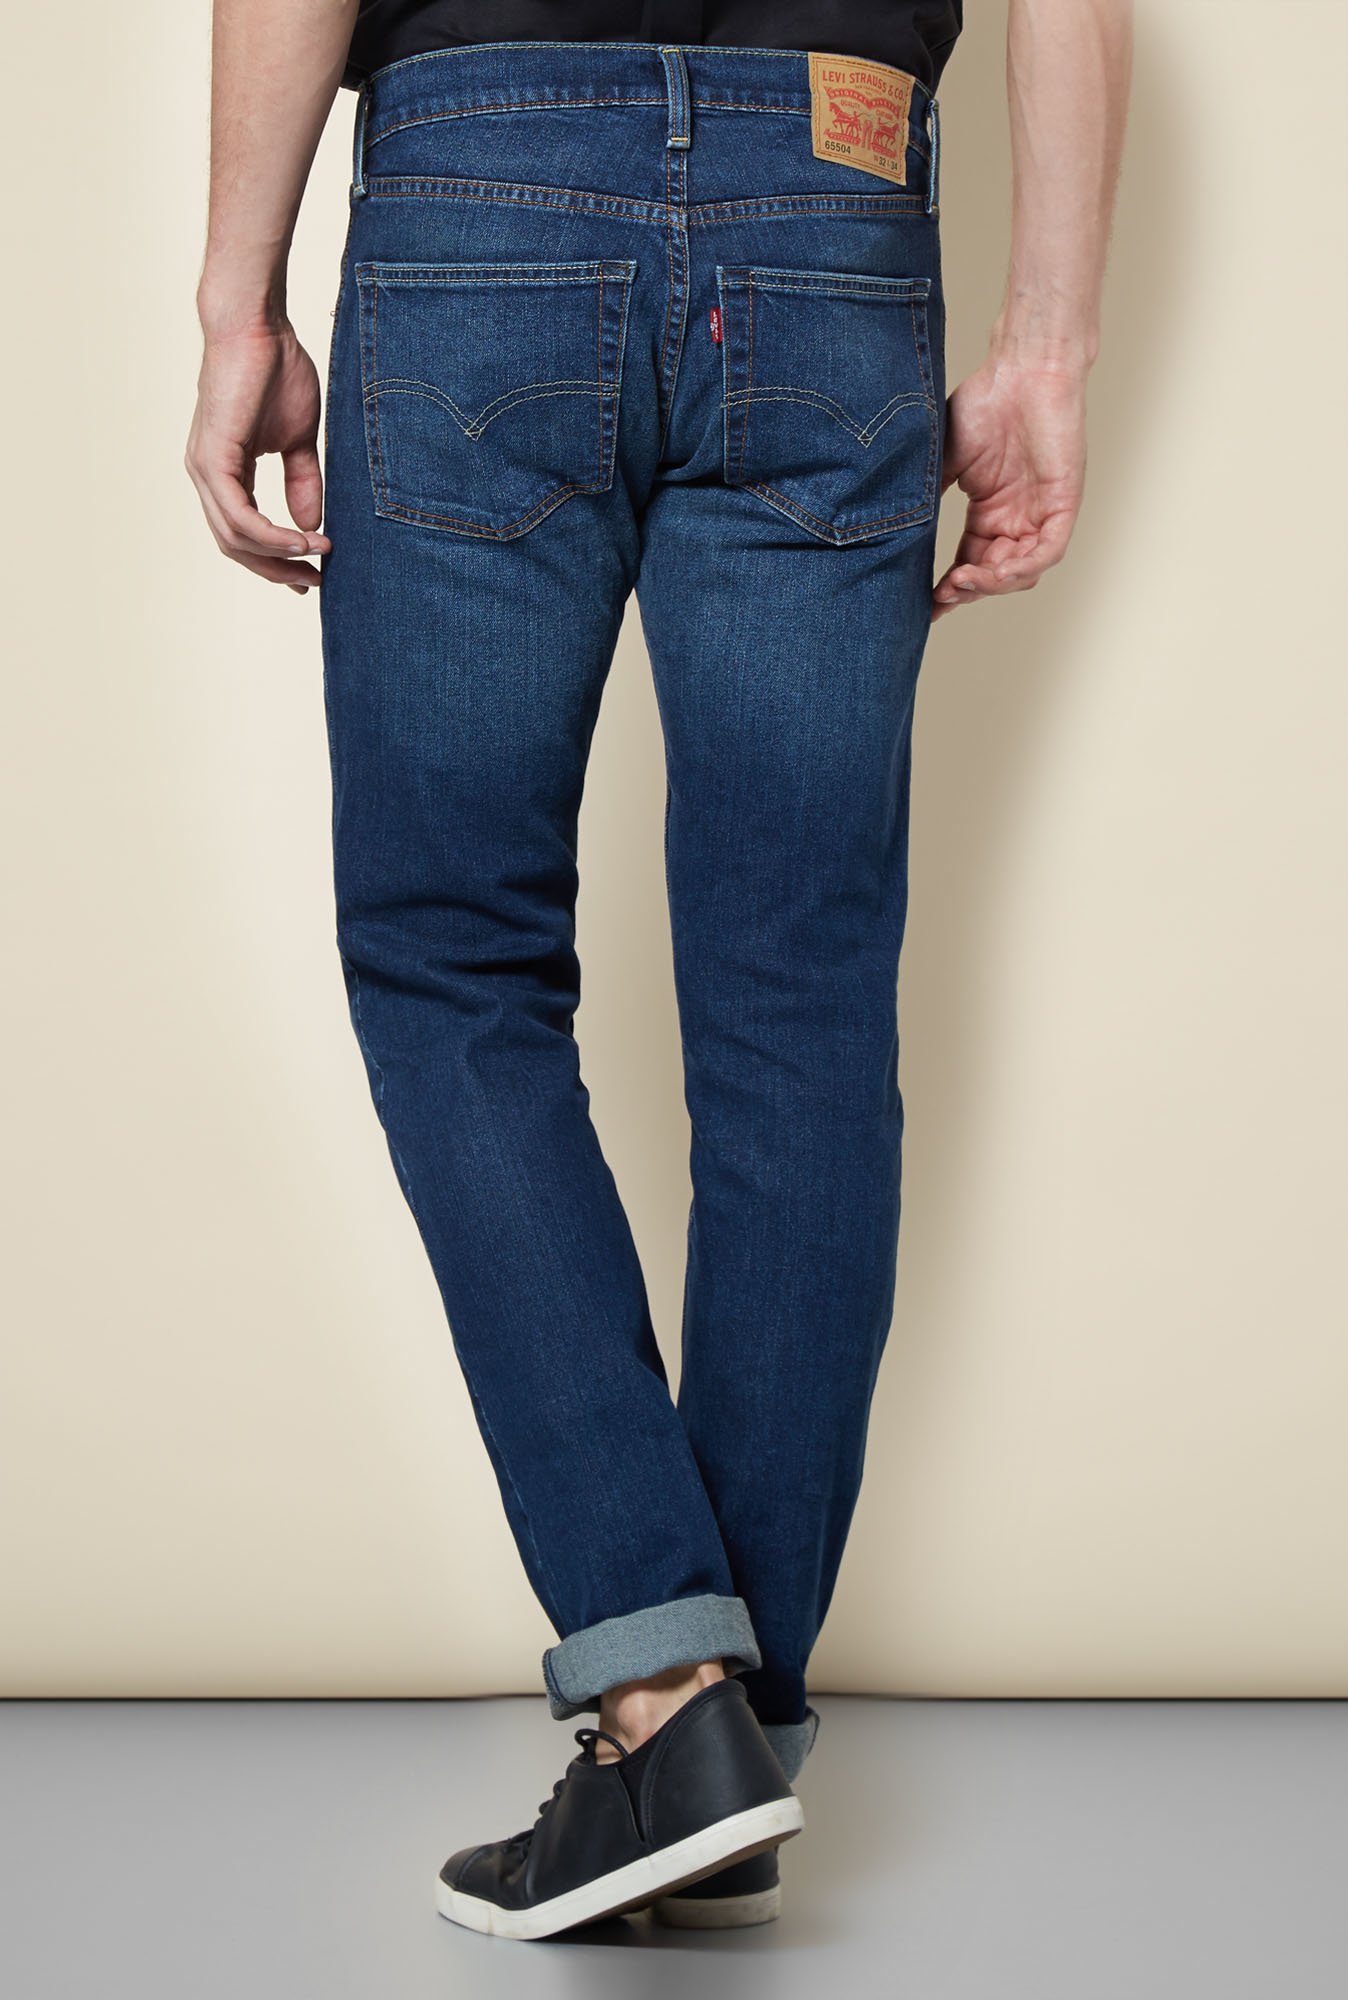 levi's 65504 jeans